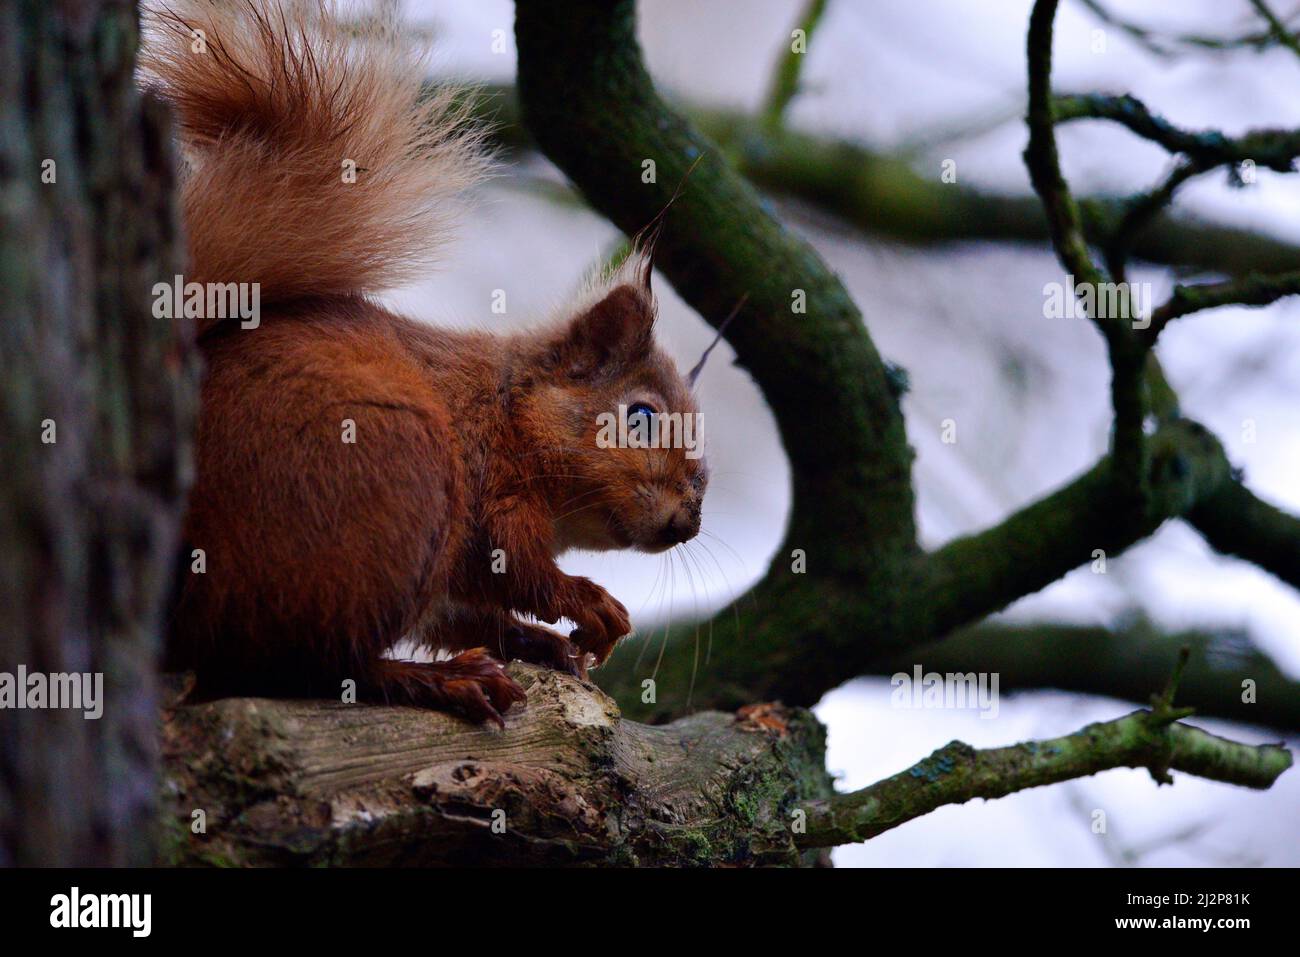 Red squirrel or Sciurus Stock Photo